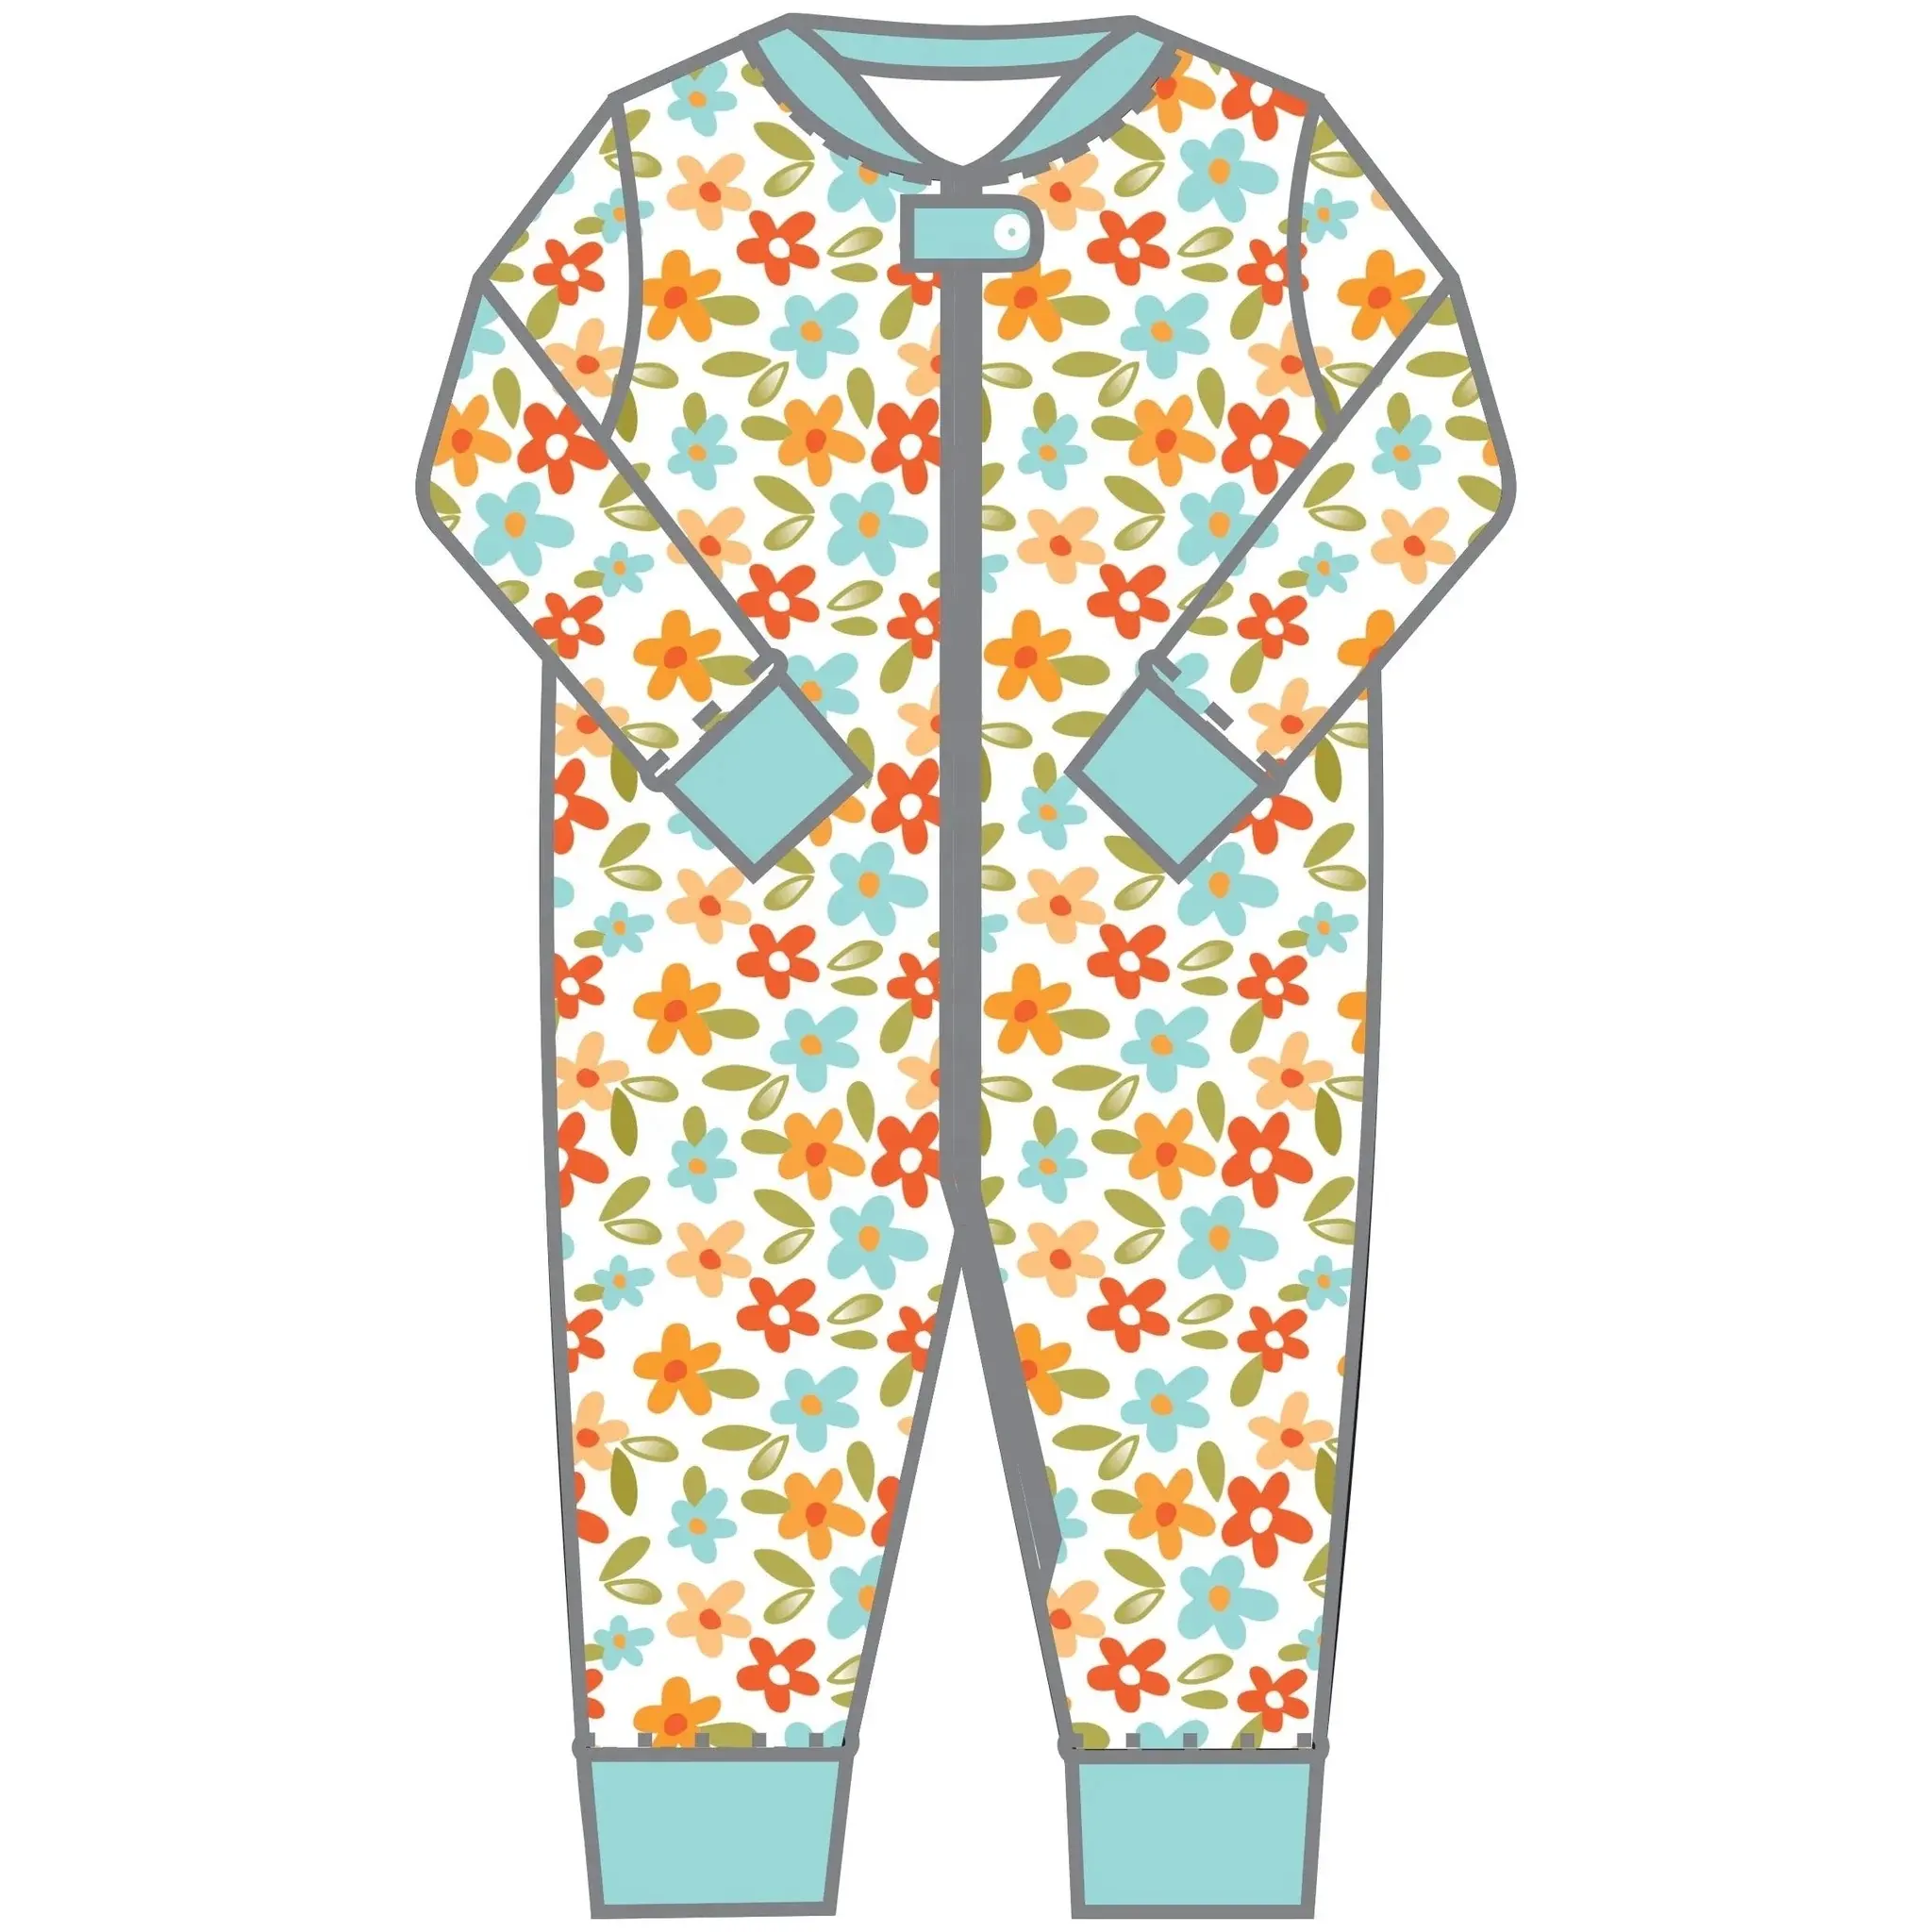 ملابس رومبير للأطفال حديثي الولادة مخصصة عضوية من الخيزران-سبانديكس-ملابس بيجامات للأطفال الصغار ملابس نوم للأطفال